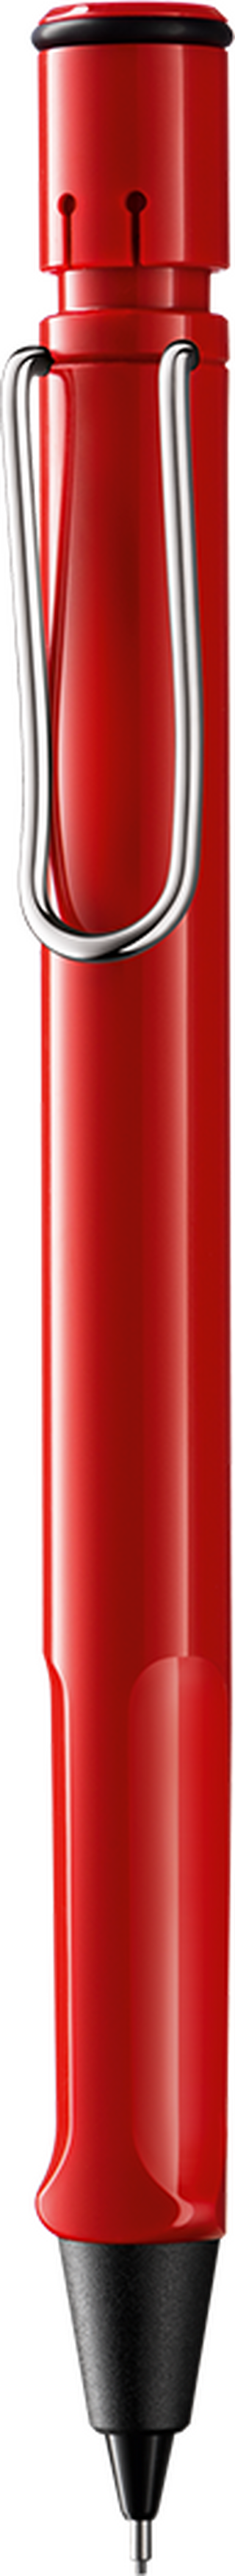 Druckbleistift LAMY safari red HB 0,5 mm